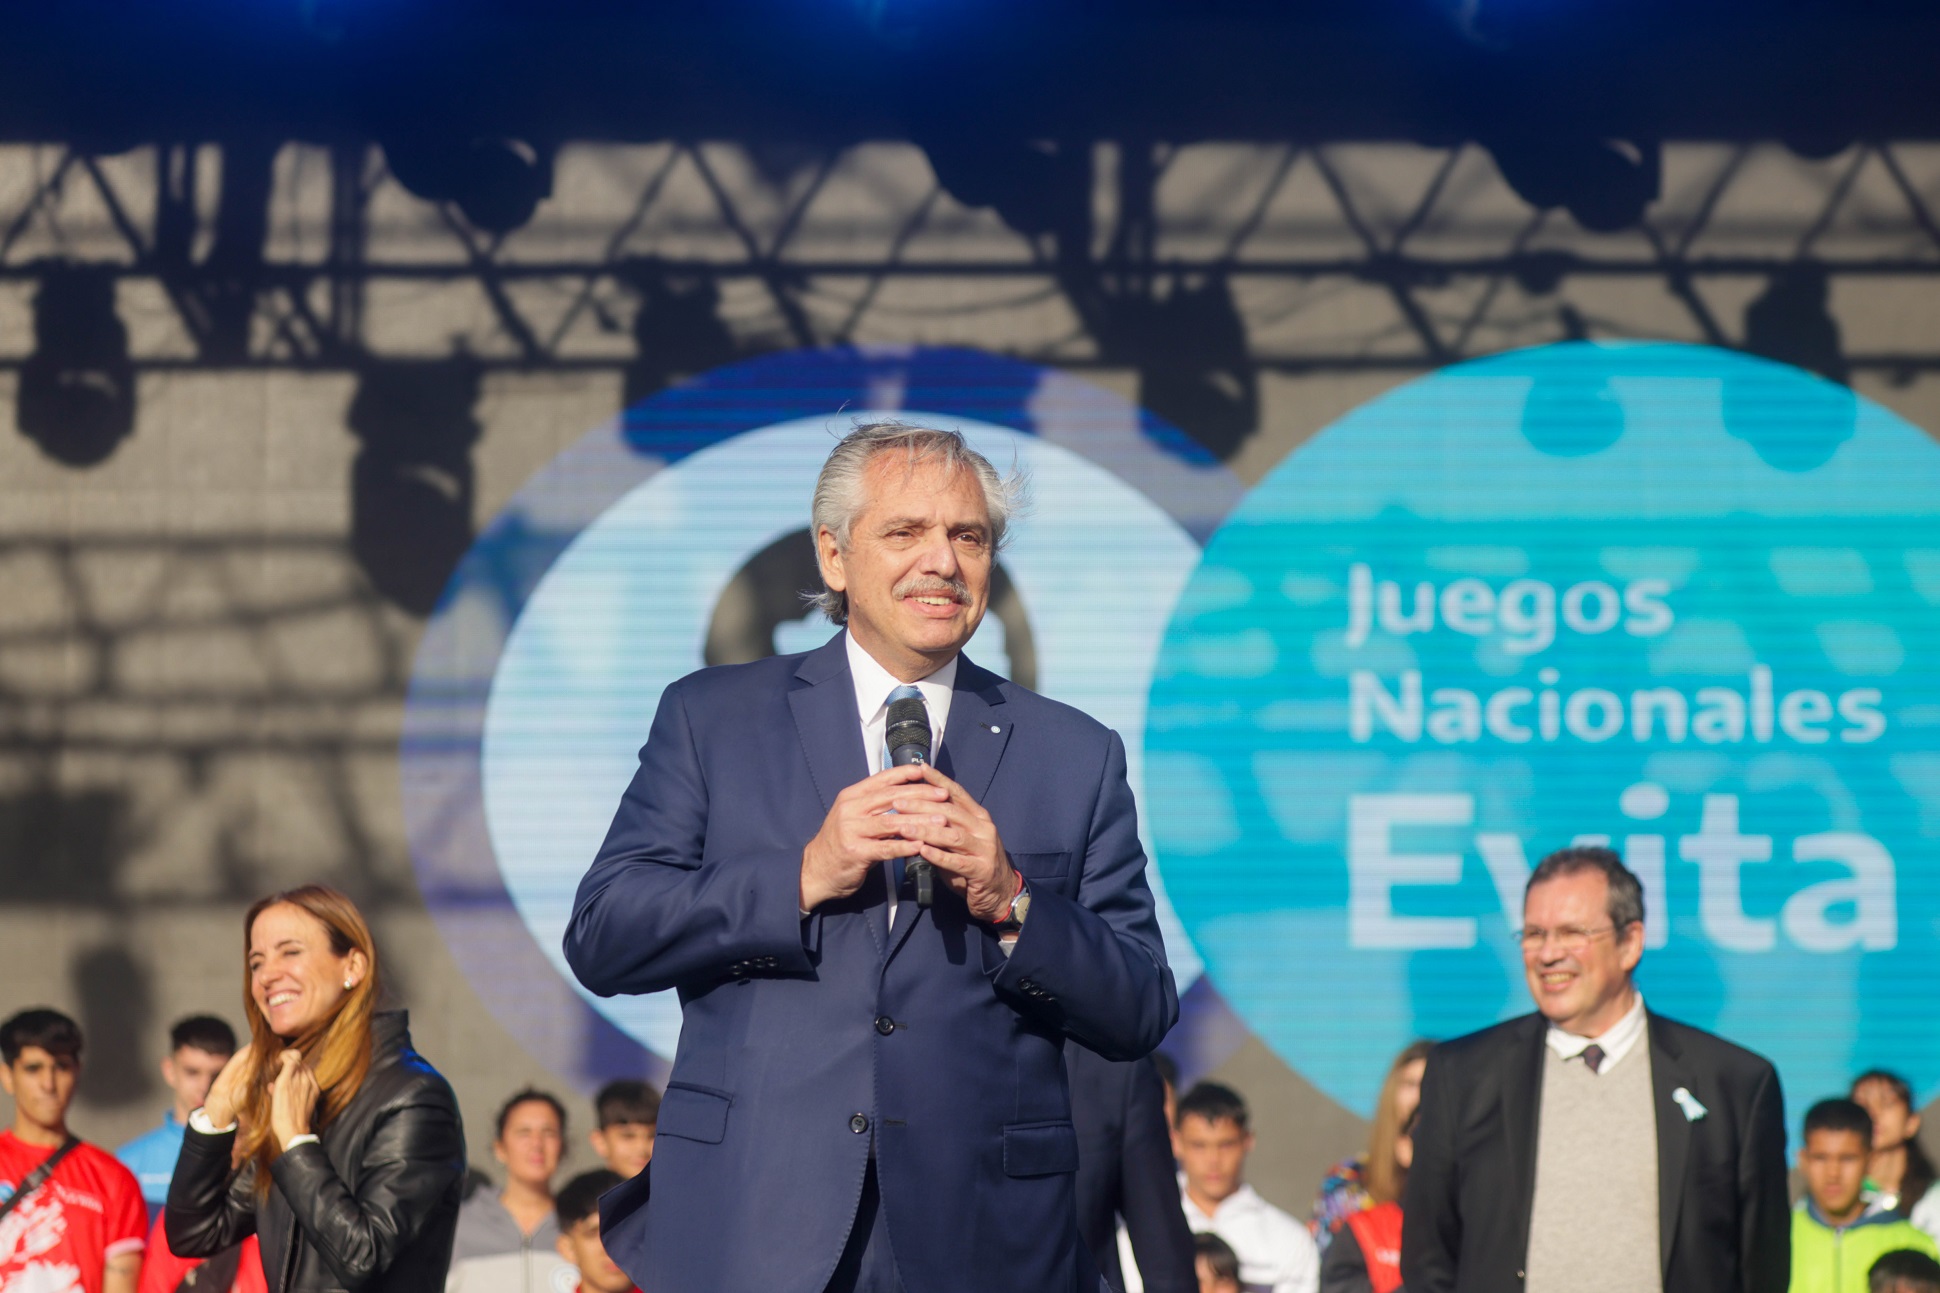 Con más de 25.000 jóvenes el presidente encabezó la inauguración de los Juegos Nacionales Evita 2022